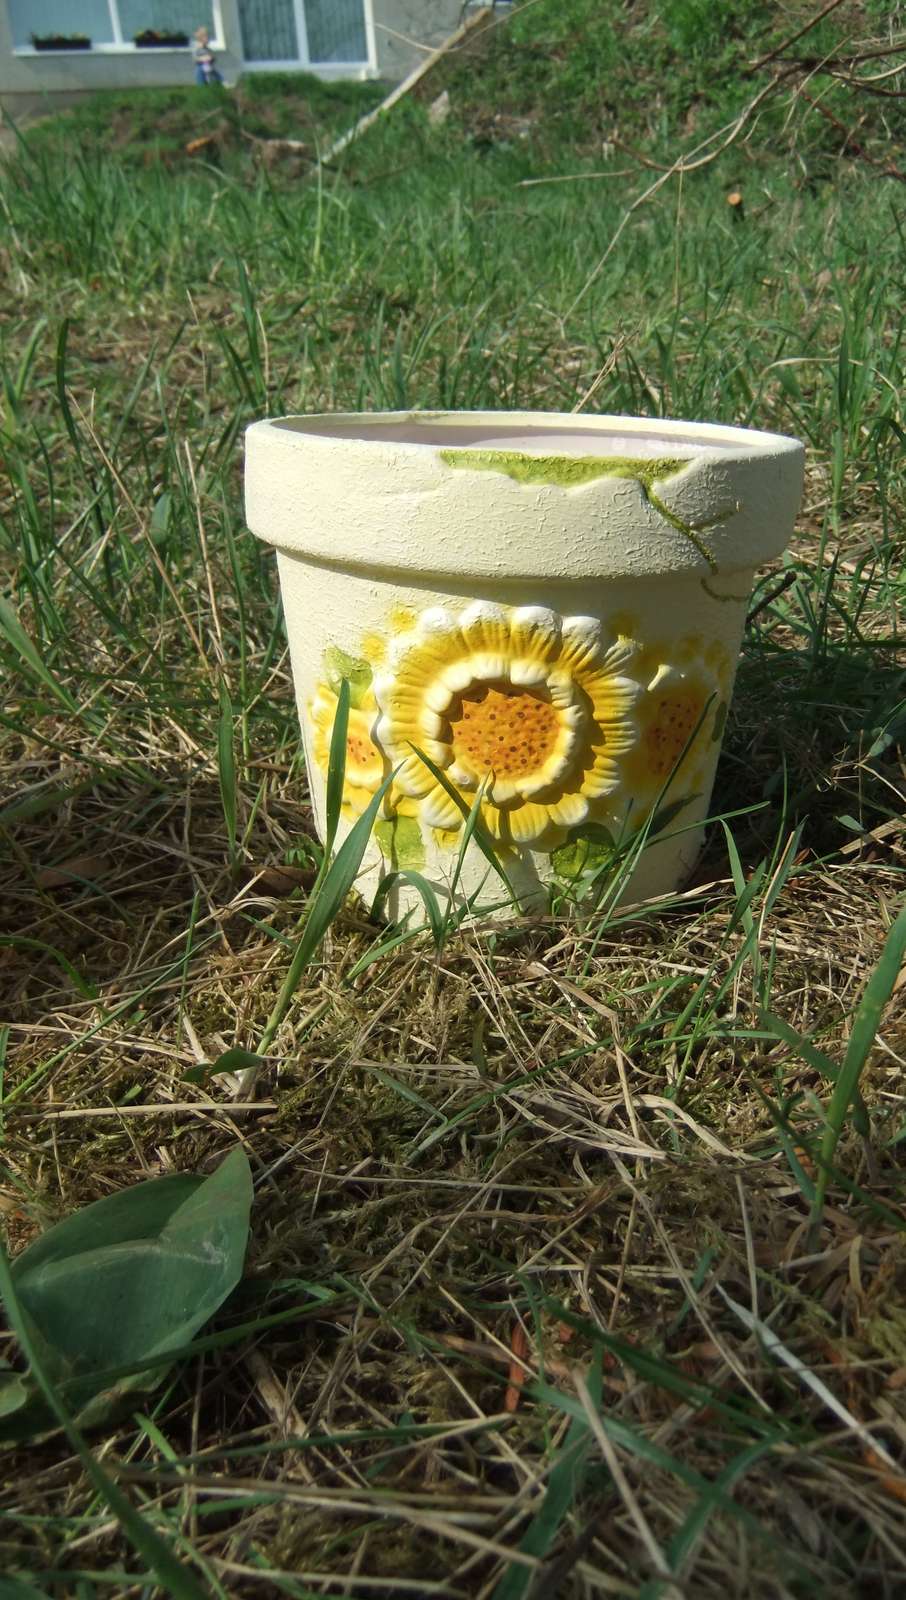 žlutý keramický květináč s kytkou  - Obrázek č. 1